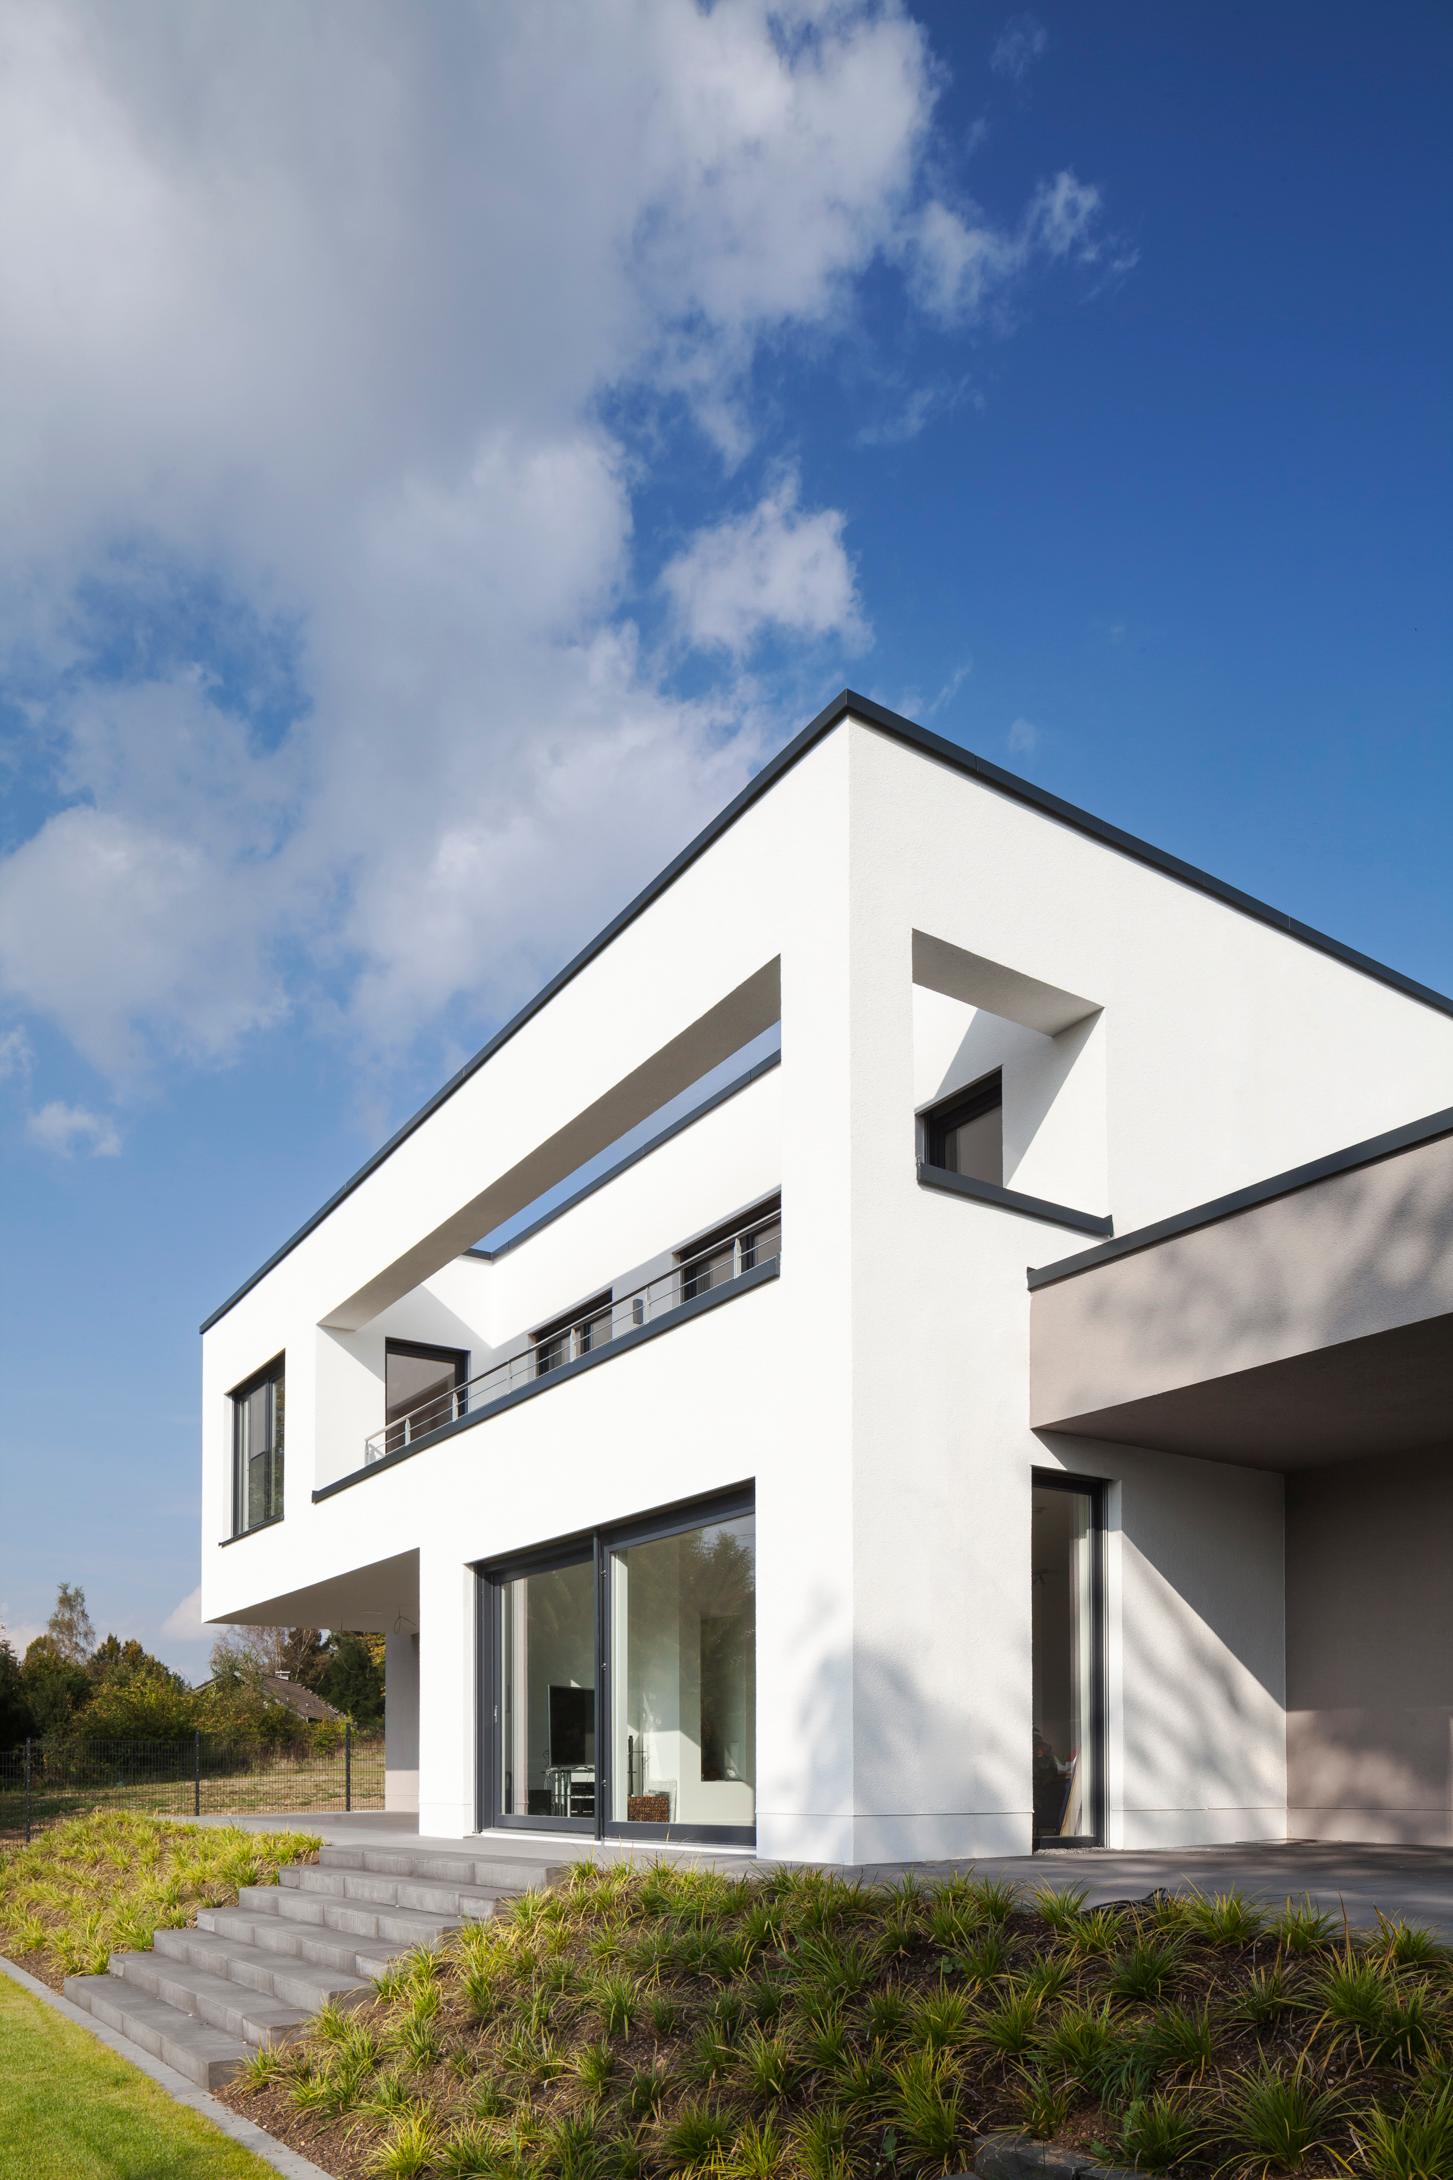 Gartenansicht #bauhausstil #terrasse #minimalistisch #eingang #flachdach #garage #innenarchitektur ©Constantin Meyer Photographie